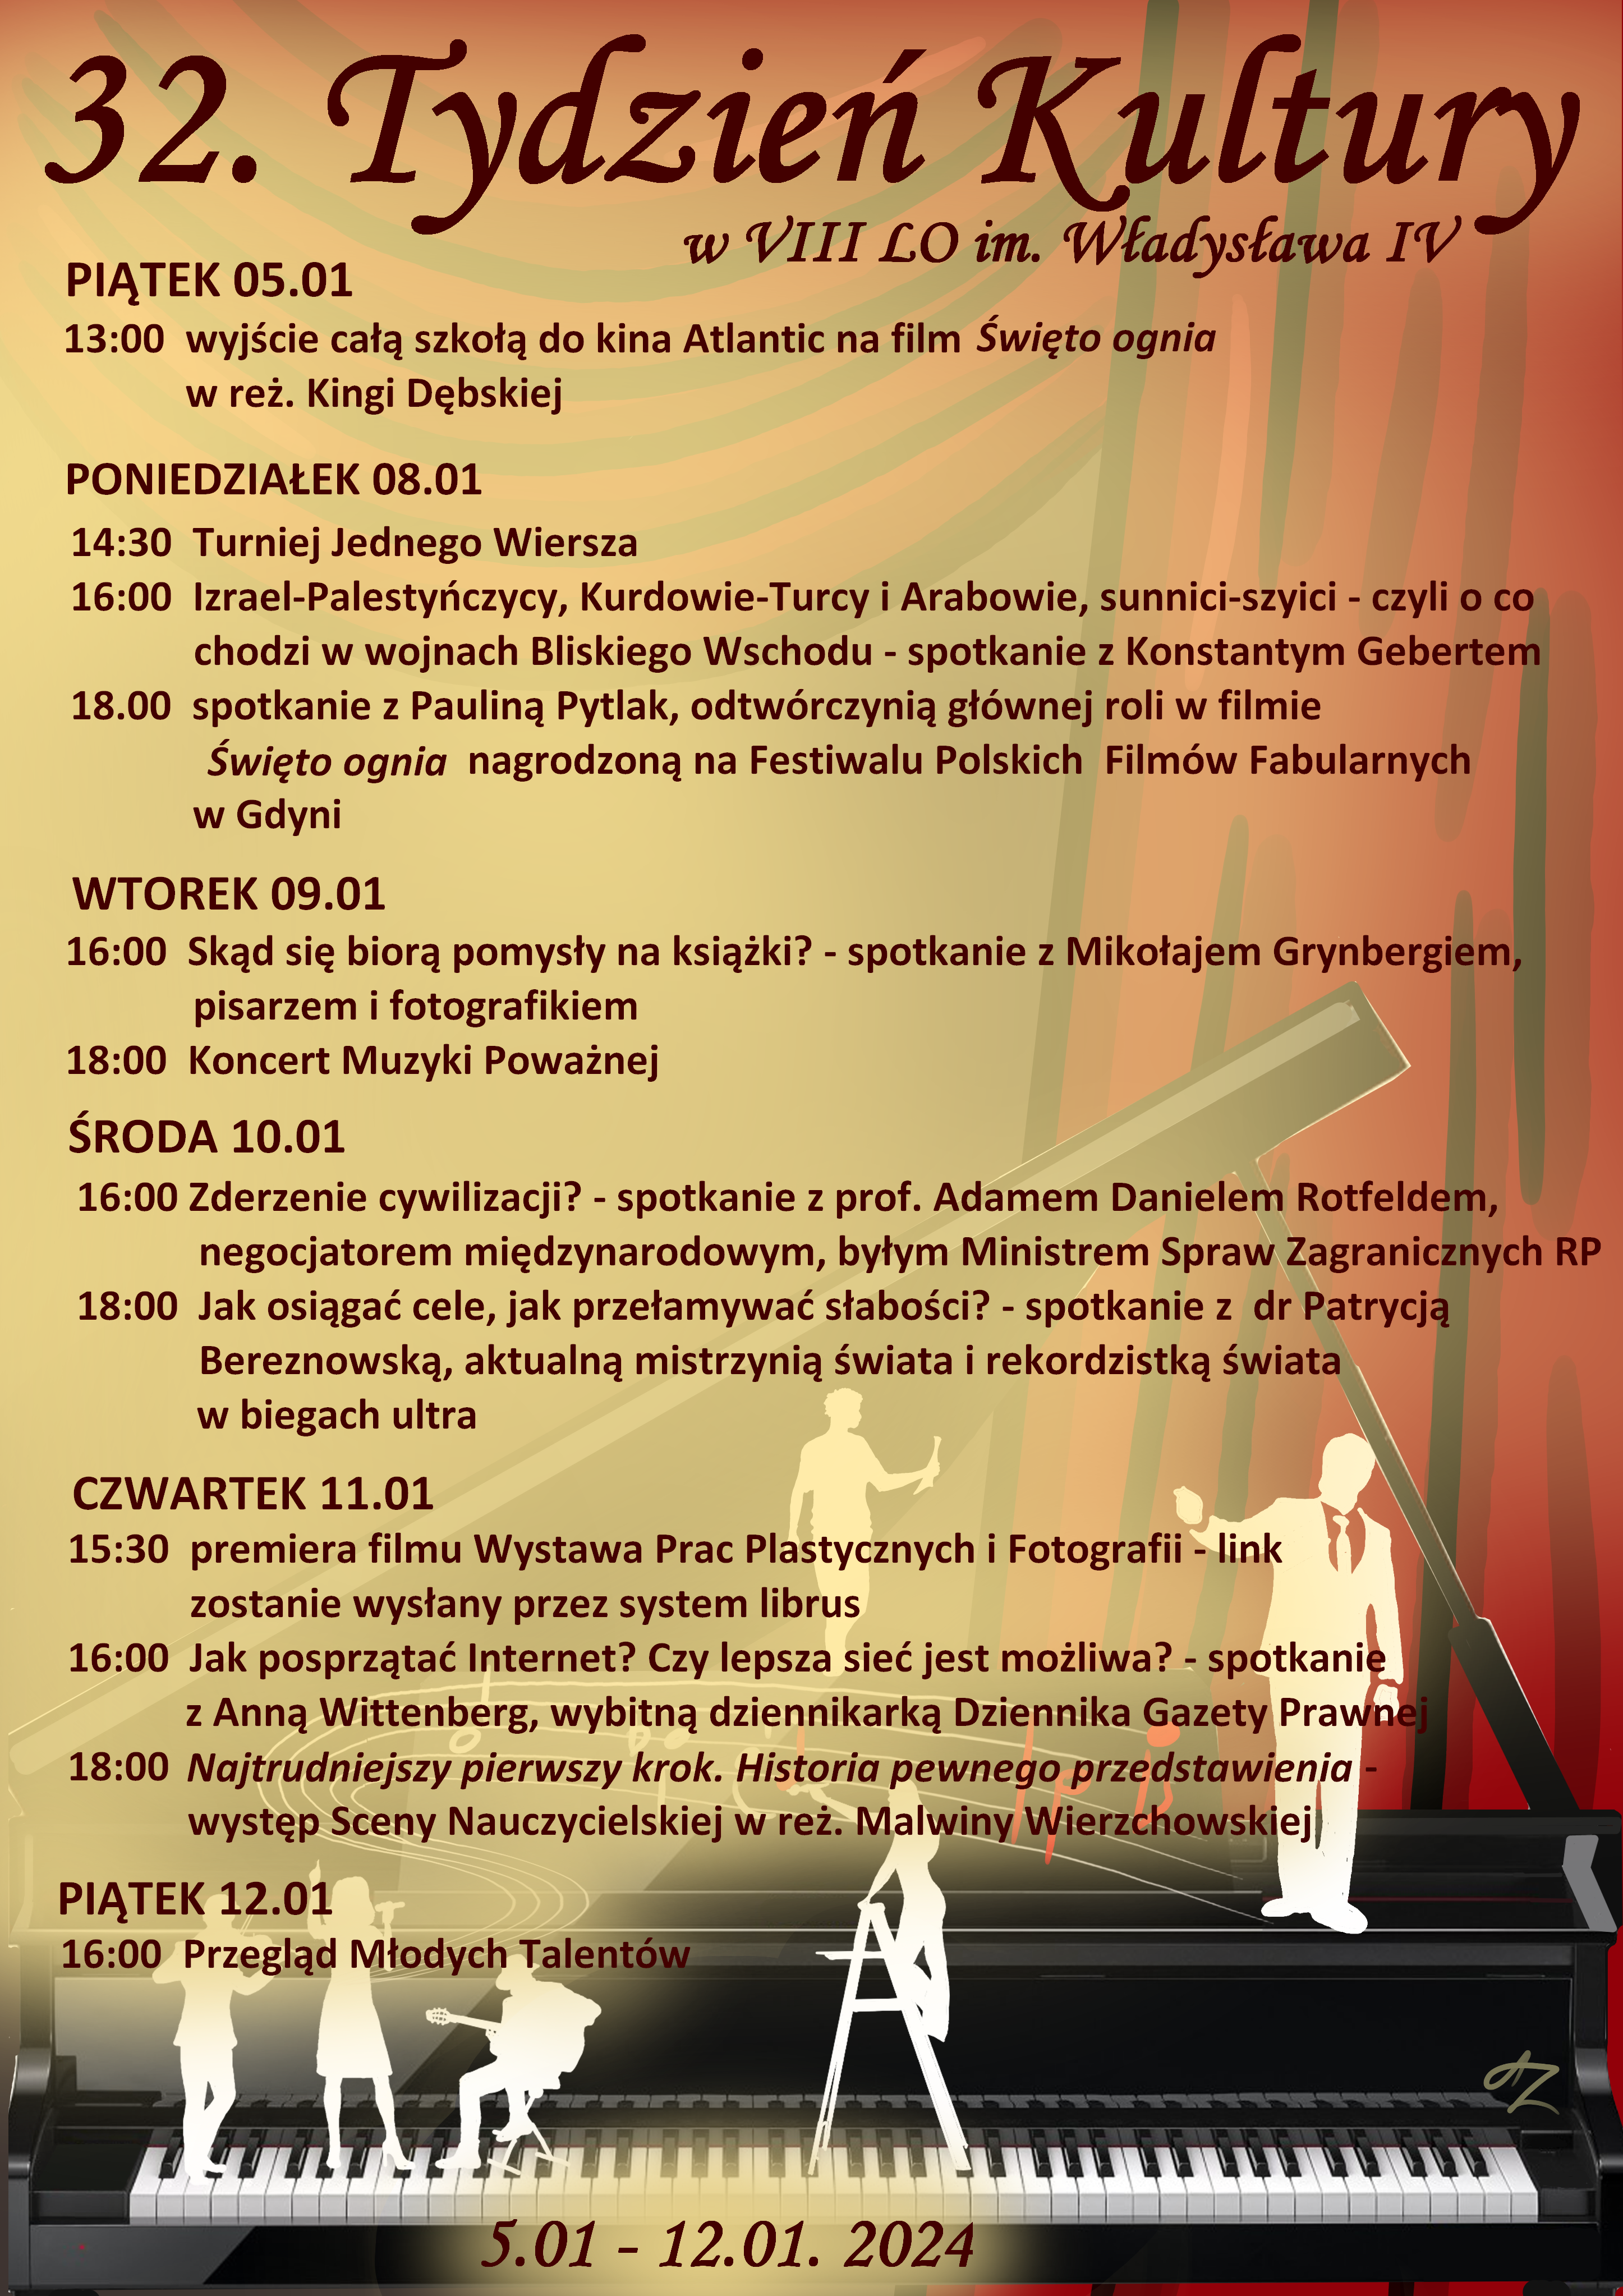 Plakat przedstawiający program spotkań w Tygodniu Kultury